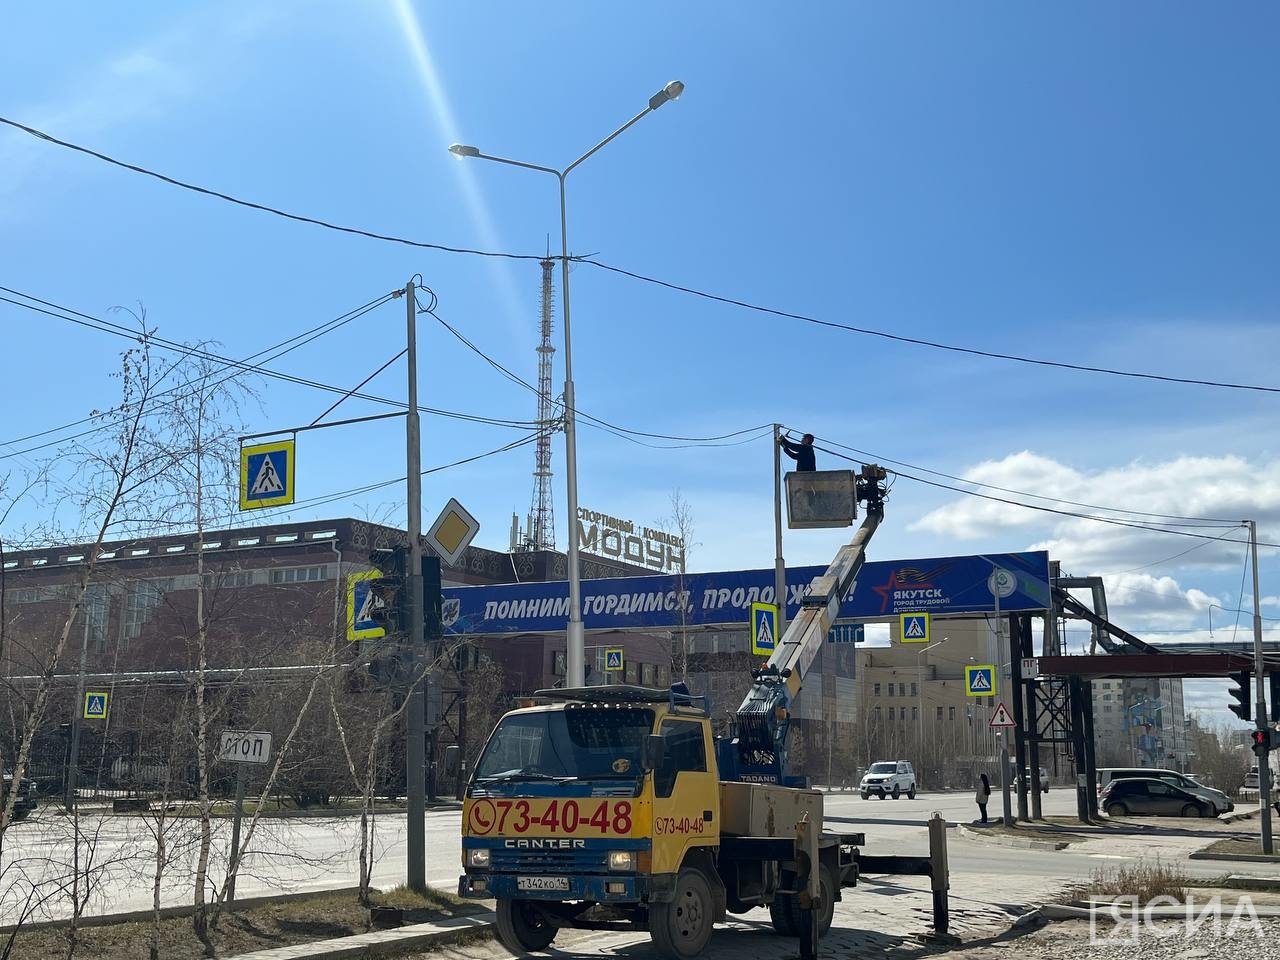 В Якутске в среду запланированы отключения света, вода и газа